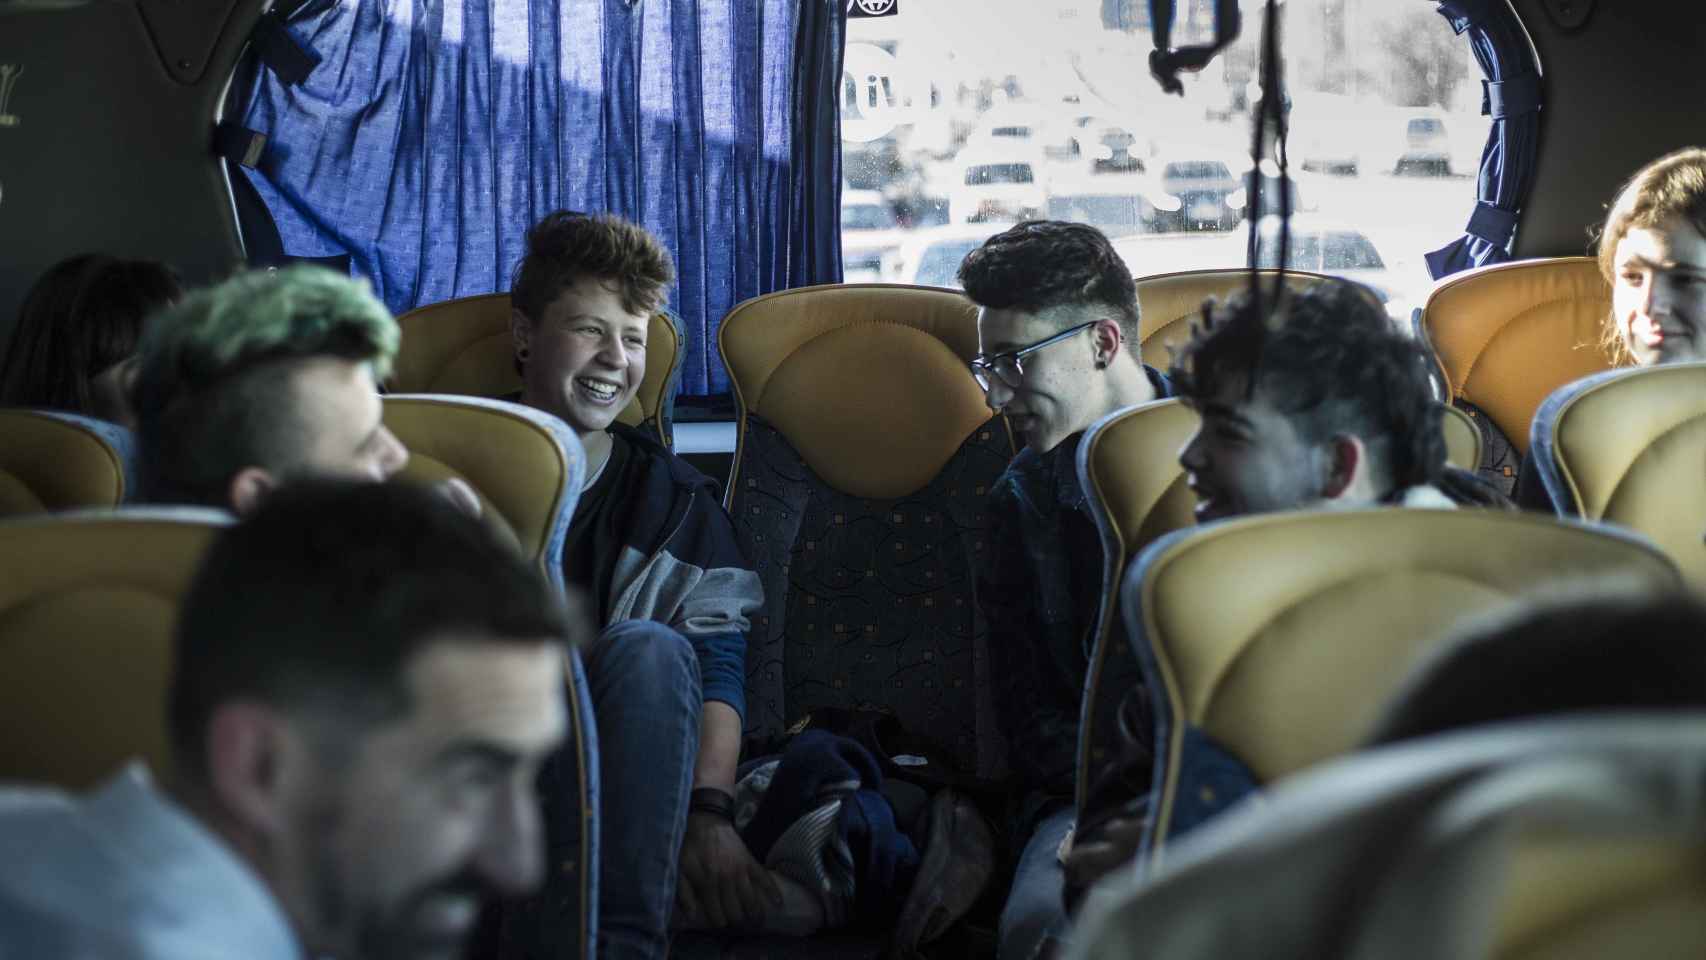 Risas entre los pasajeros del autobús trans al acercarse a Madrid.